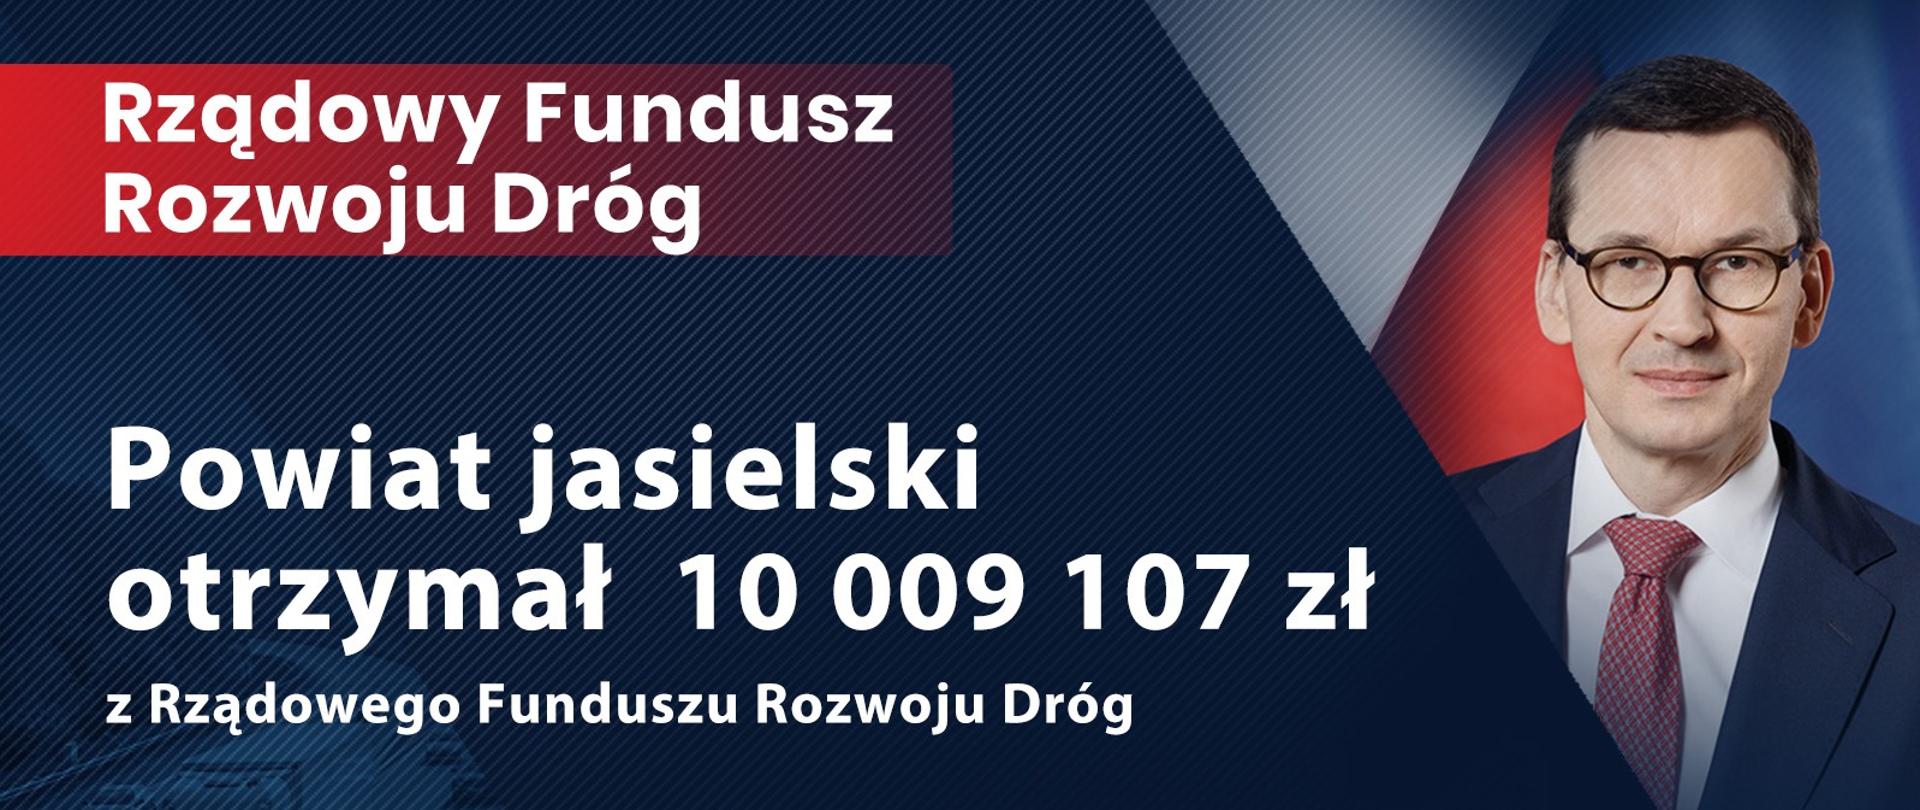 Powiat Jasielski otrzymał 10 009 107 zł w ramach Rządowego Funduszu Rozwoju Dróg